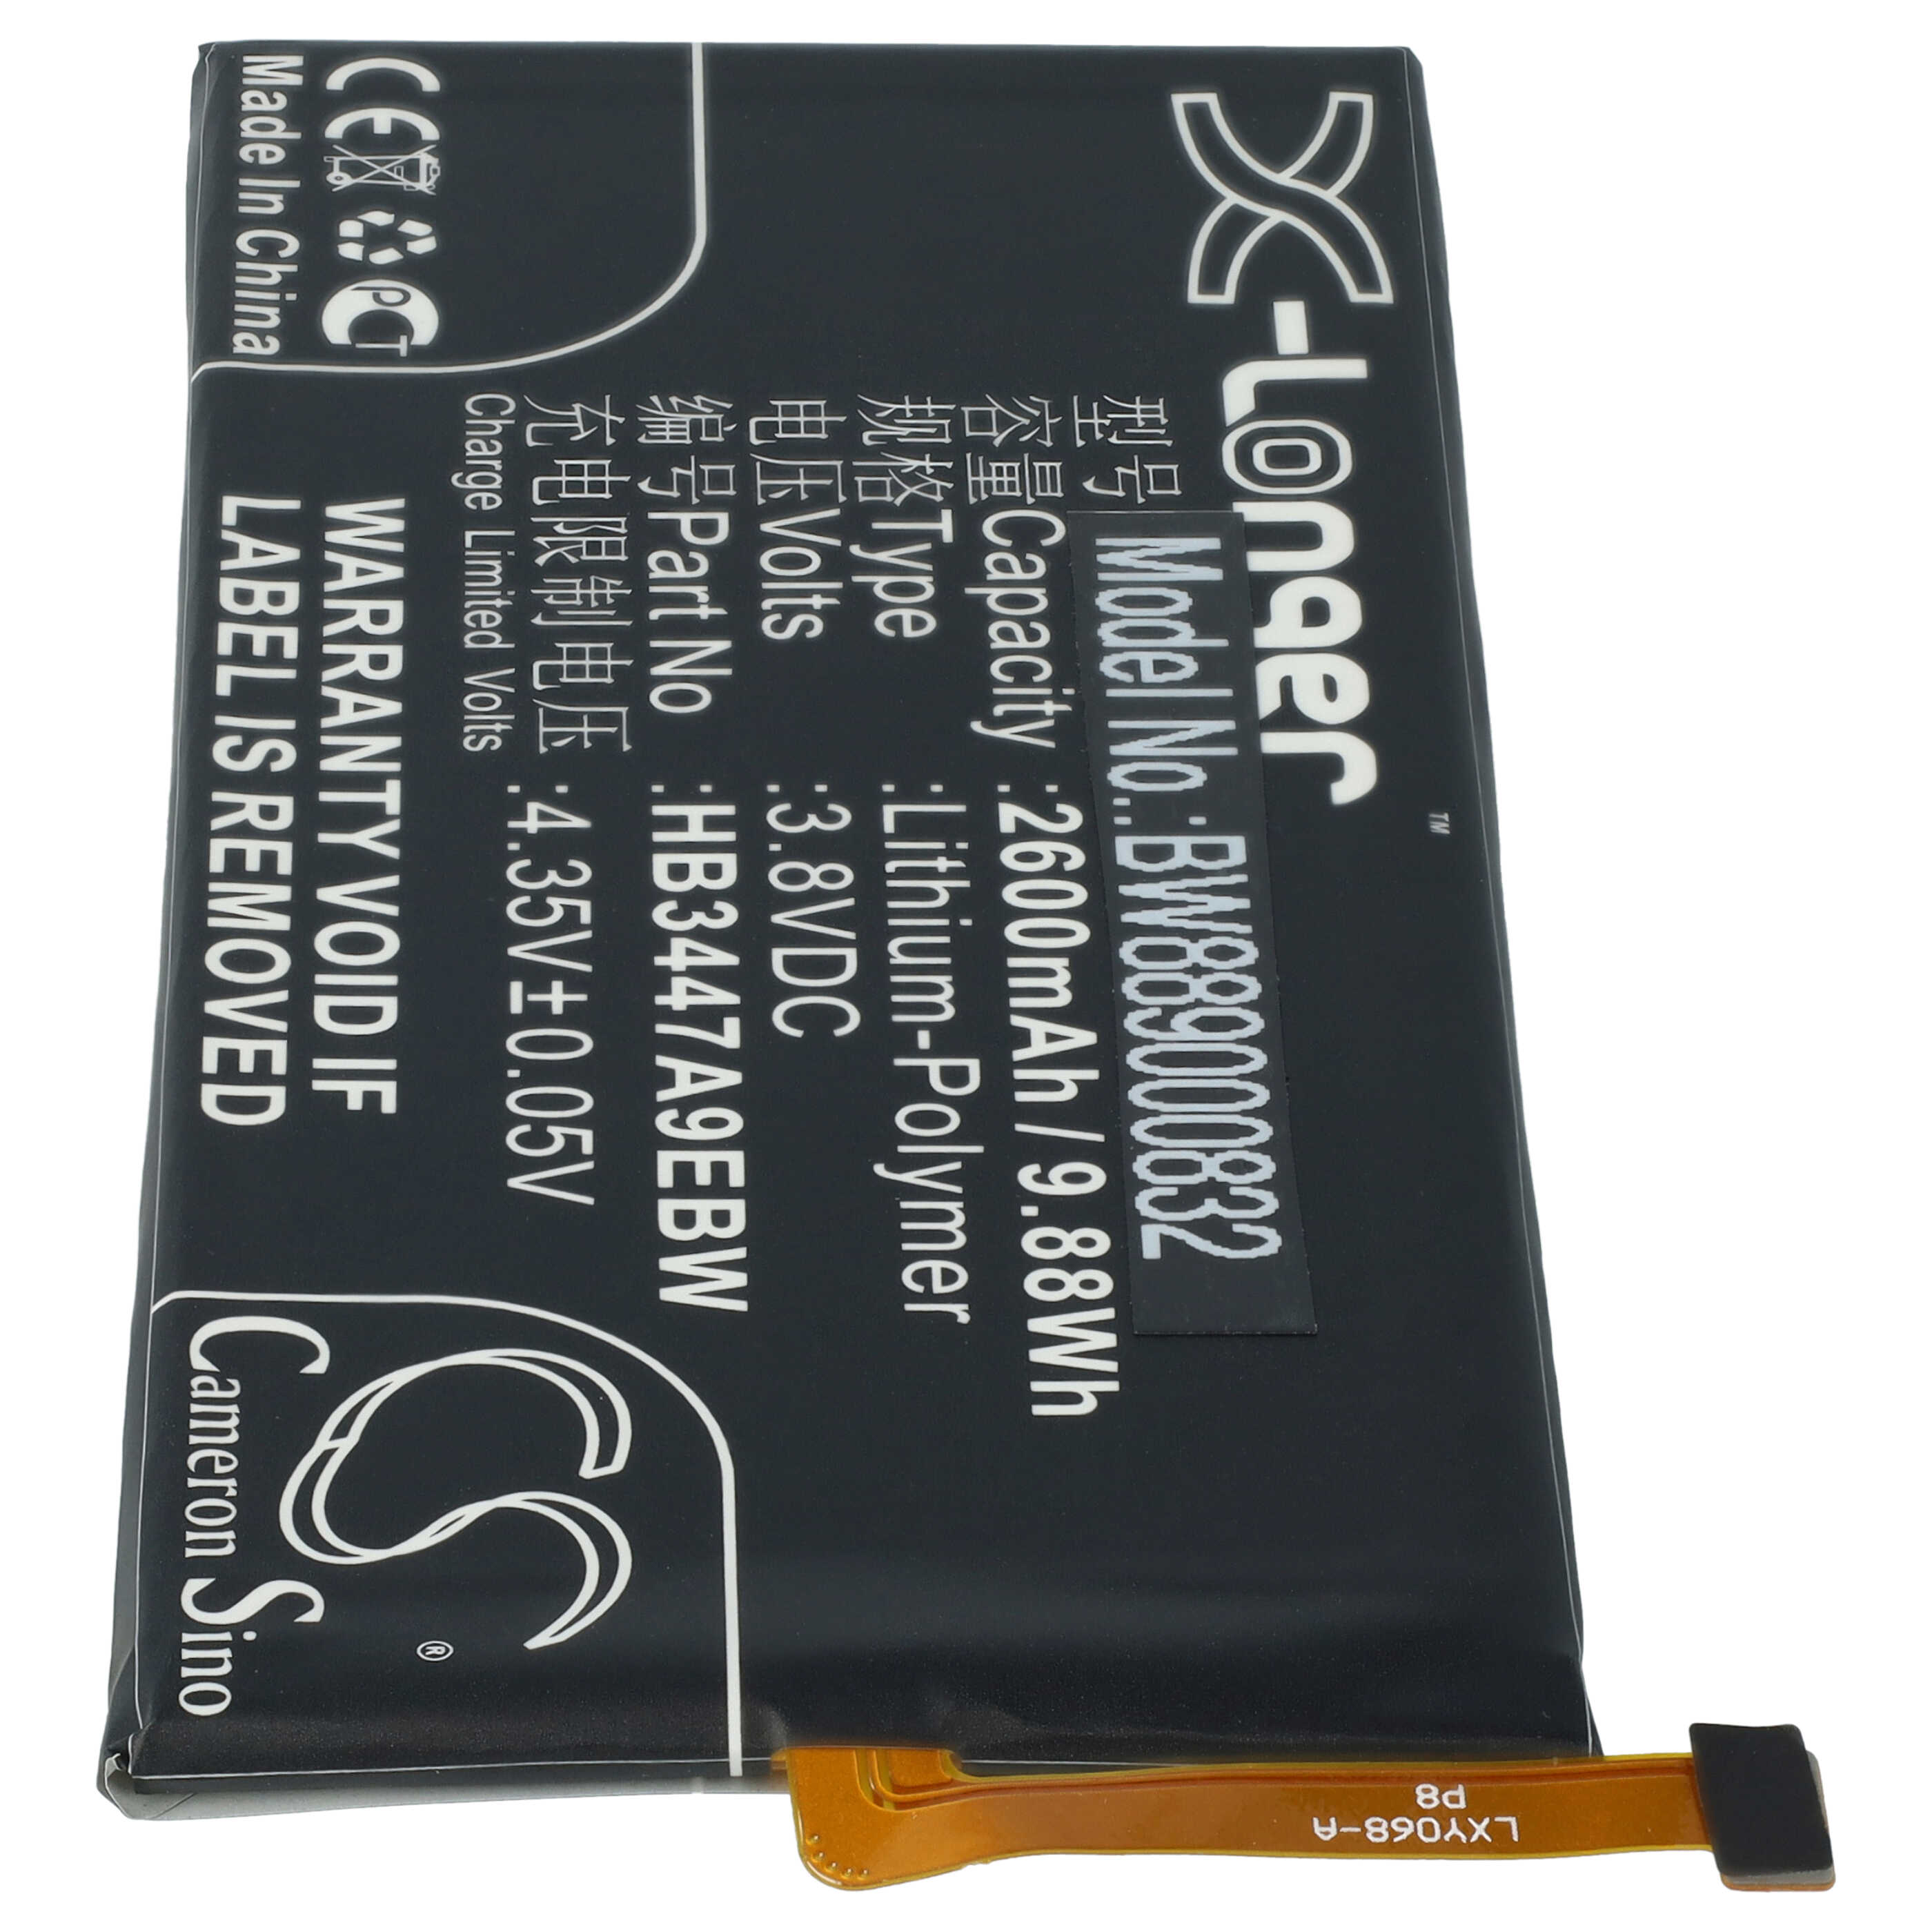 Batteria sostituisce Huawei HB3447A9EBW, HB3447A9EBC per cellulare Huawei - 2600mAh 3,8V Li-Poly